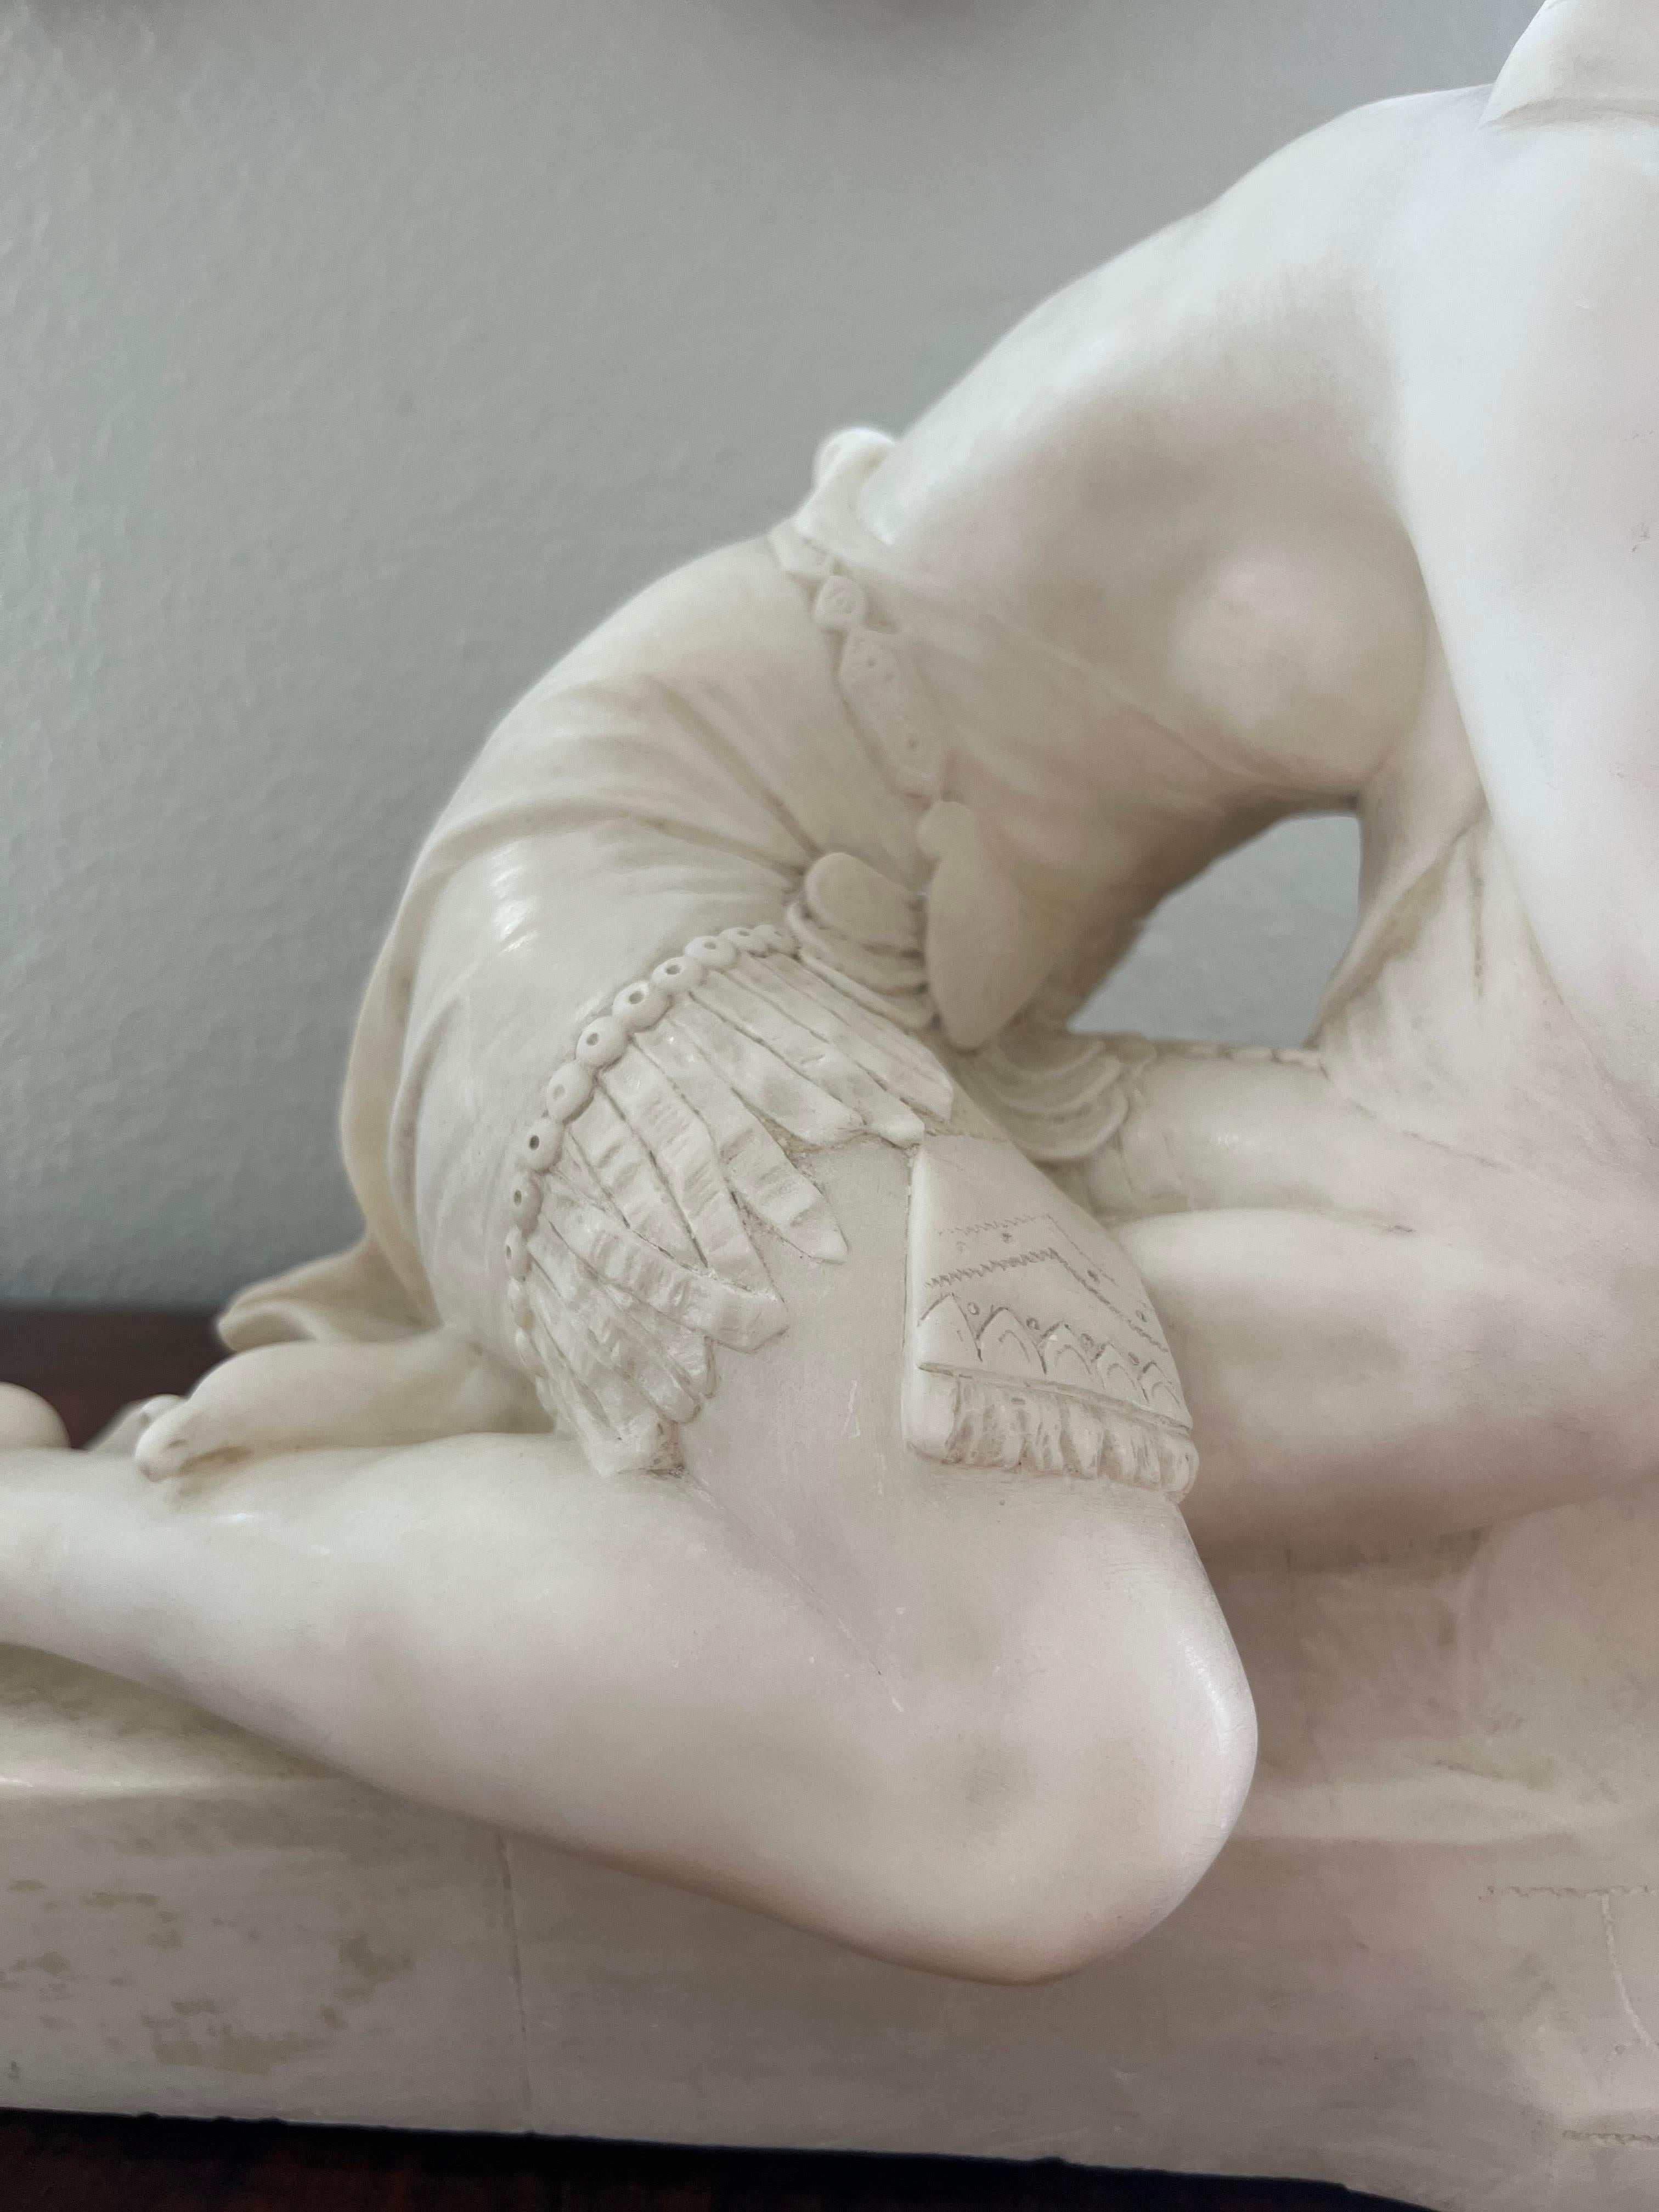 Weiße Alabaster-Skulptur von Kleopatra, halbnackt in Ruhestellung.  Tolle Details an Kleidung und Kopfschmuck.  Das Gesicht ist scharf geschnitzt.  Die Skulptur wird aufgrund des Stils und des Themas stark auf Eugenio Battiglia zurückgeführt. 